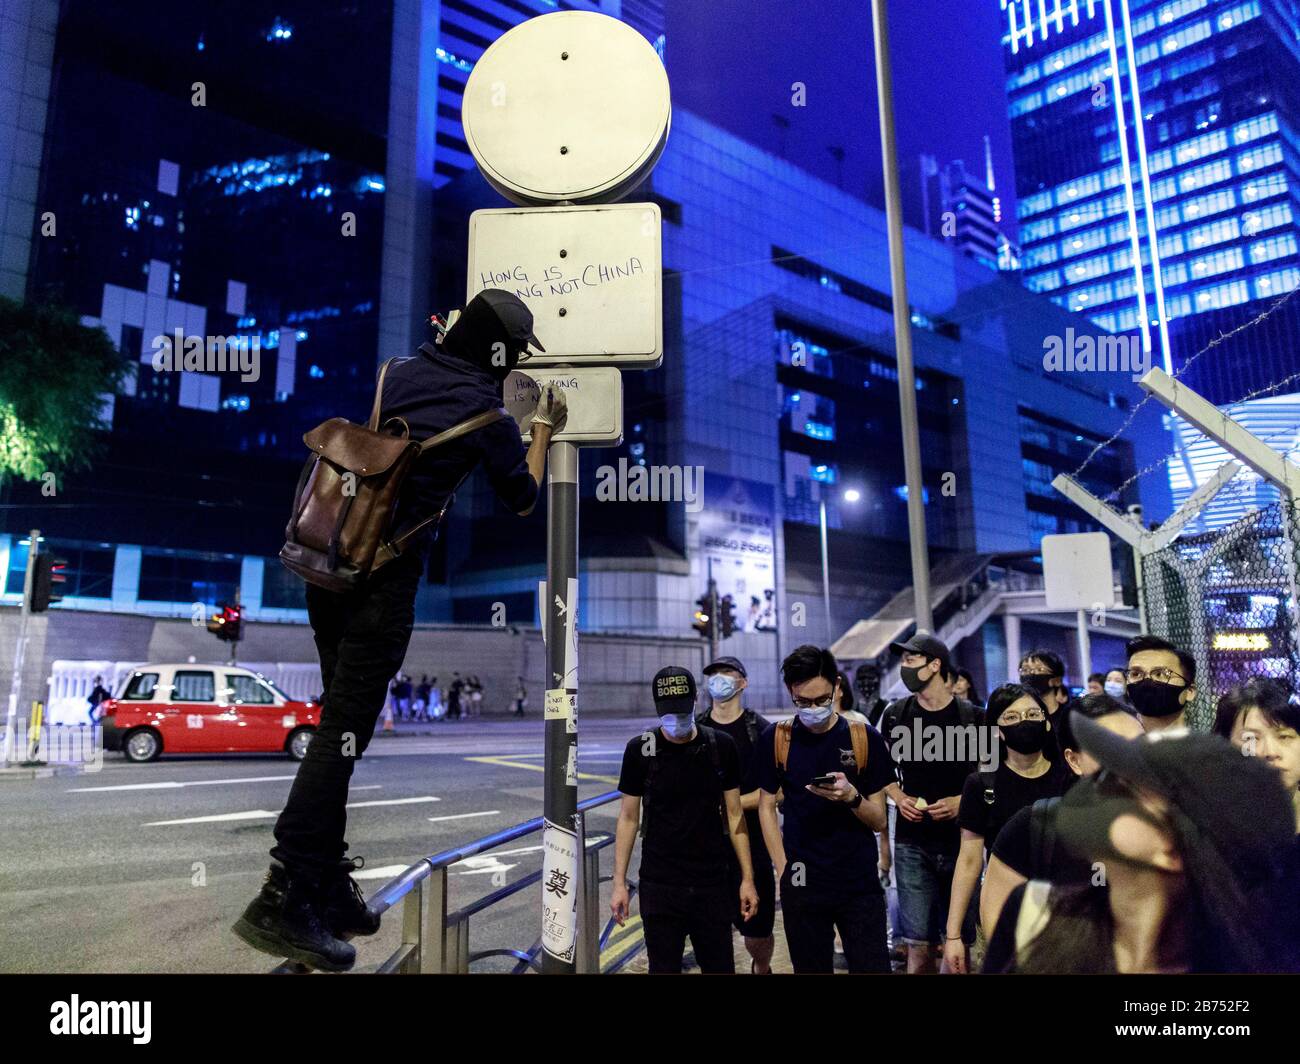 Un protester écrit "Hong Kong n'est pas la Chine" sur un poteau. Les manifestants se confrontent avec la police au cinquième anniversaire du mouvement des parapluies de l'Amirauté. La police utilise un canon à eau pour les disperser. Banque D'Images